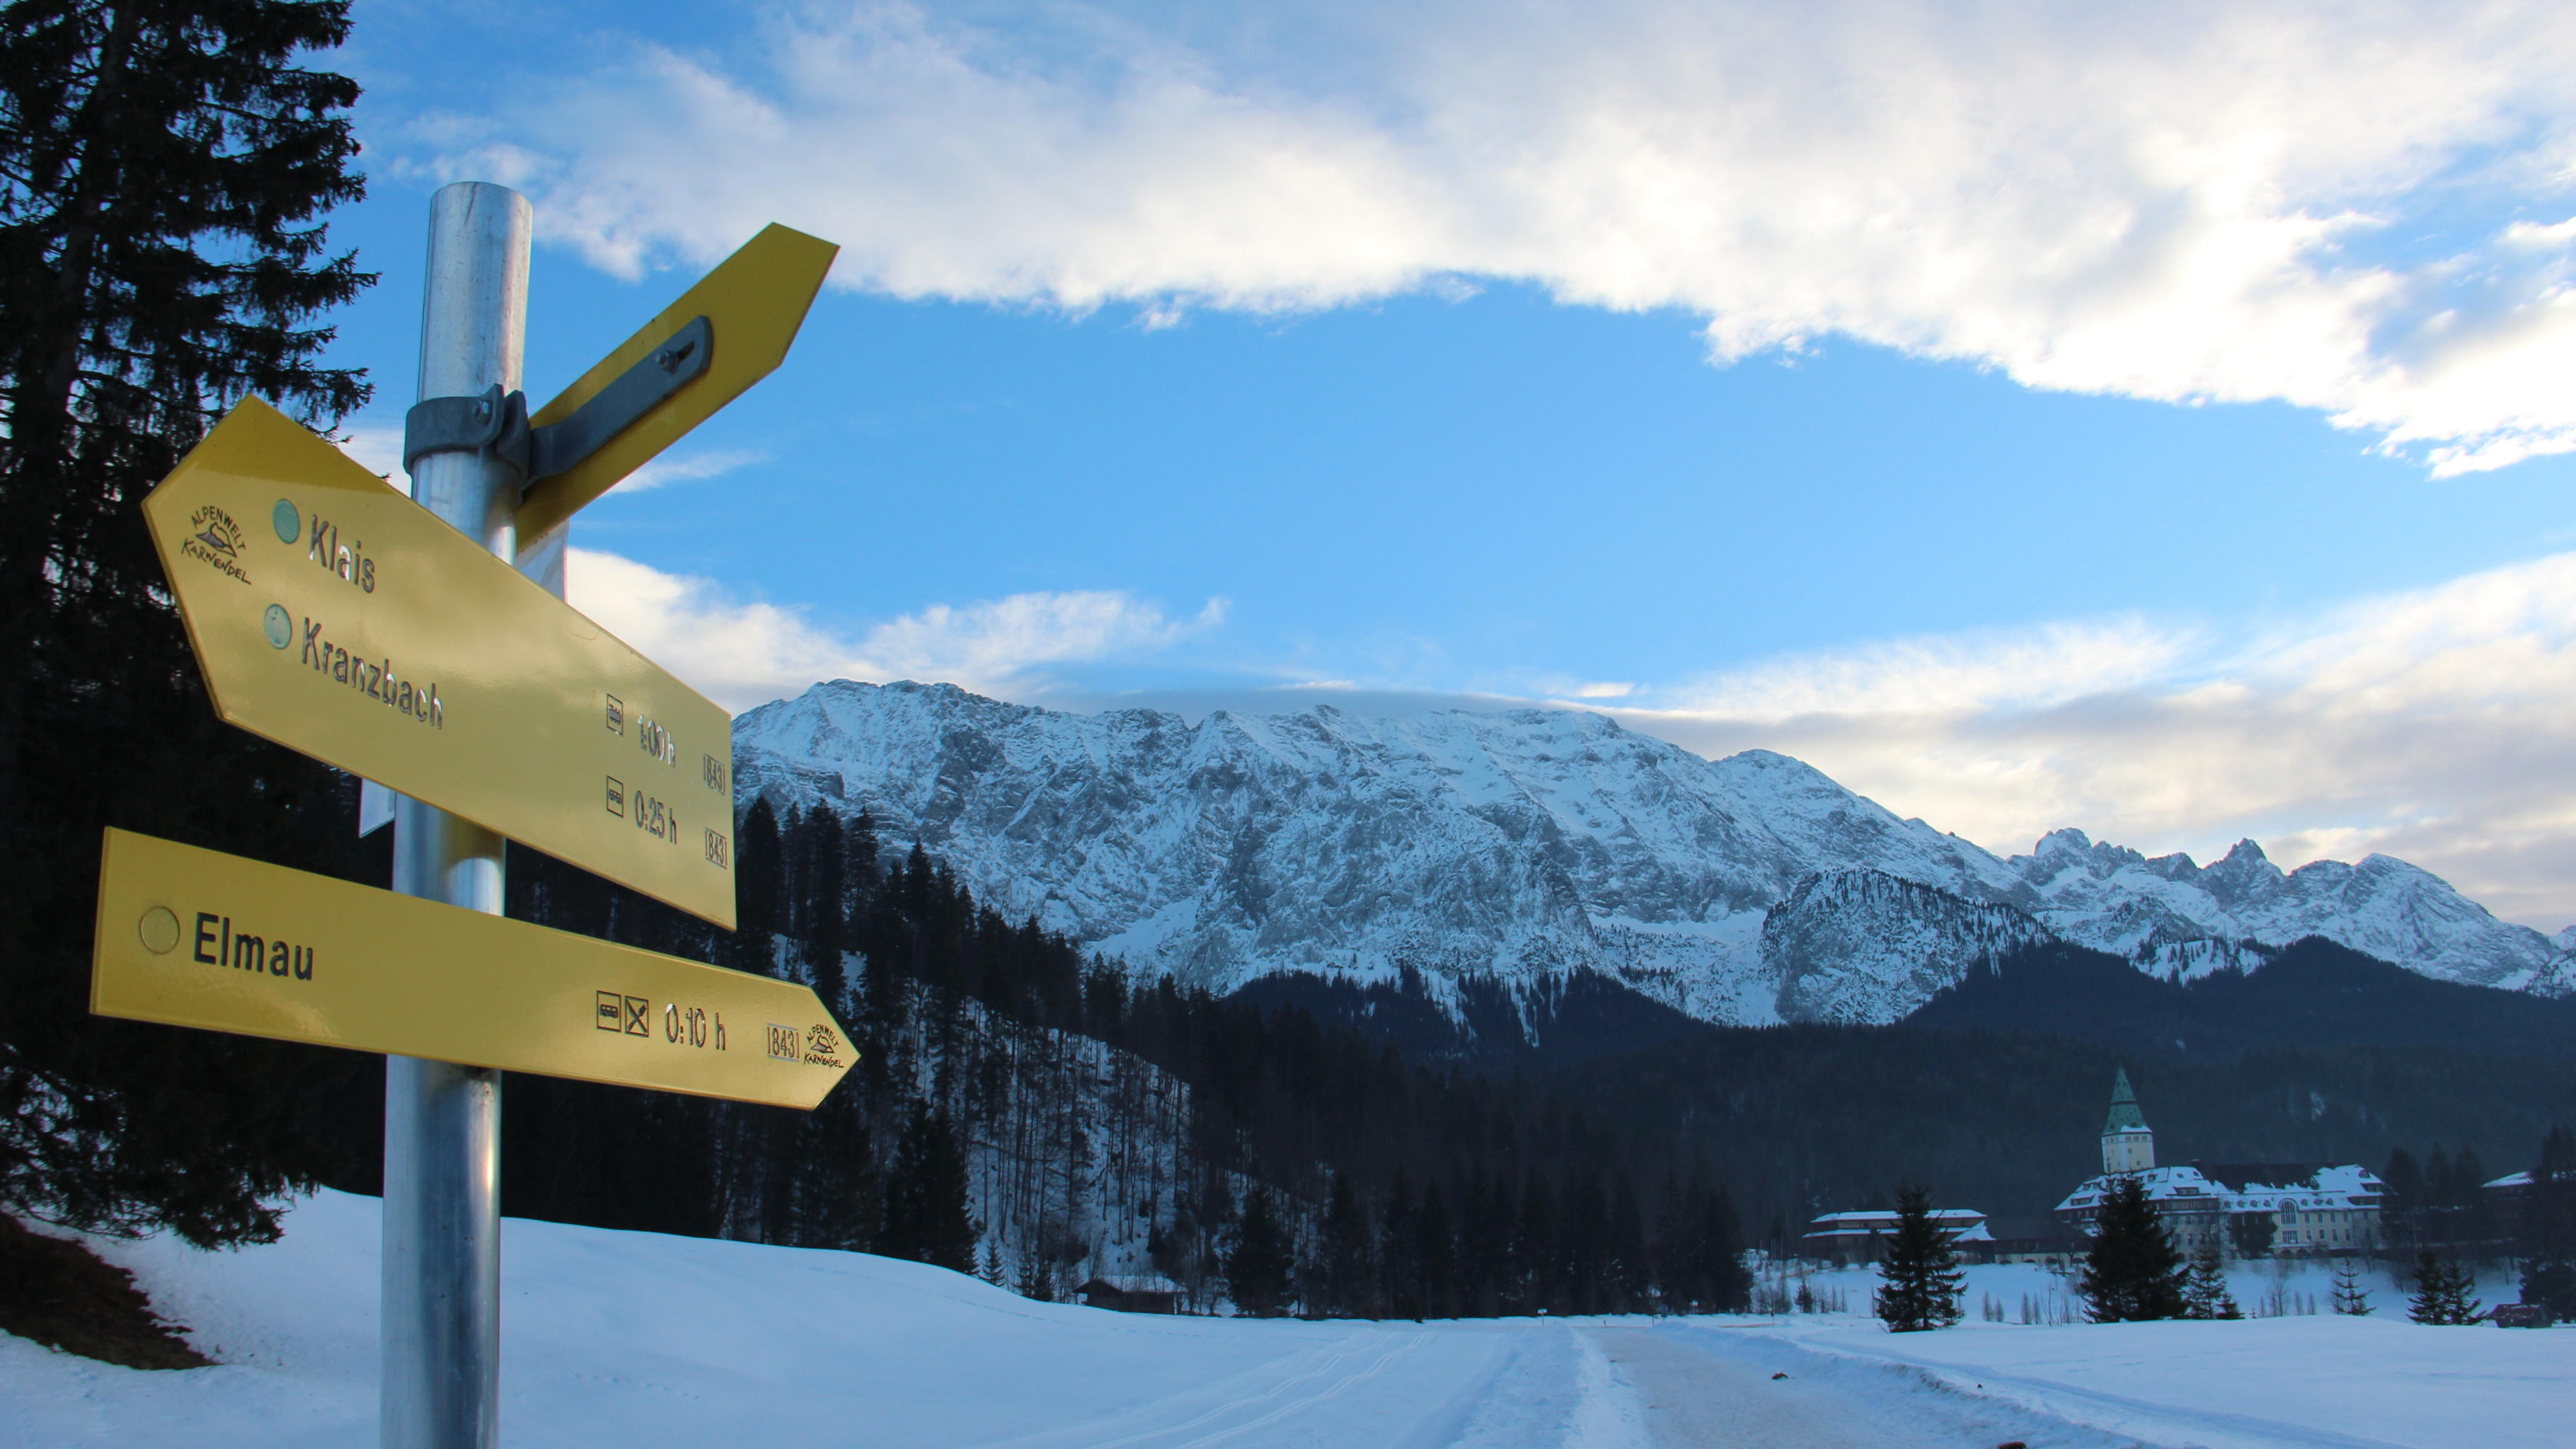 Wegweiser nach Elmau in einer schneebedeckten Alpenlandschaft